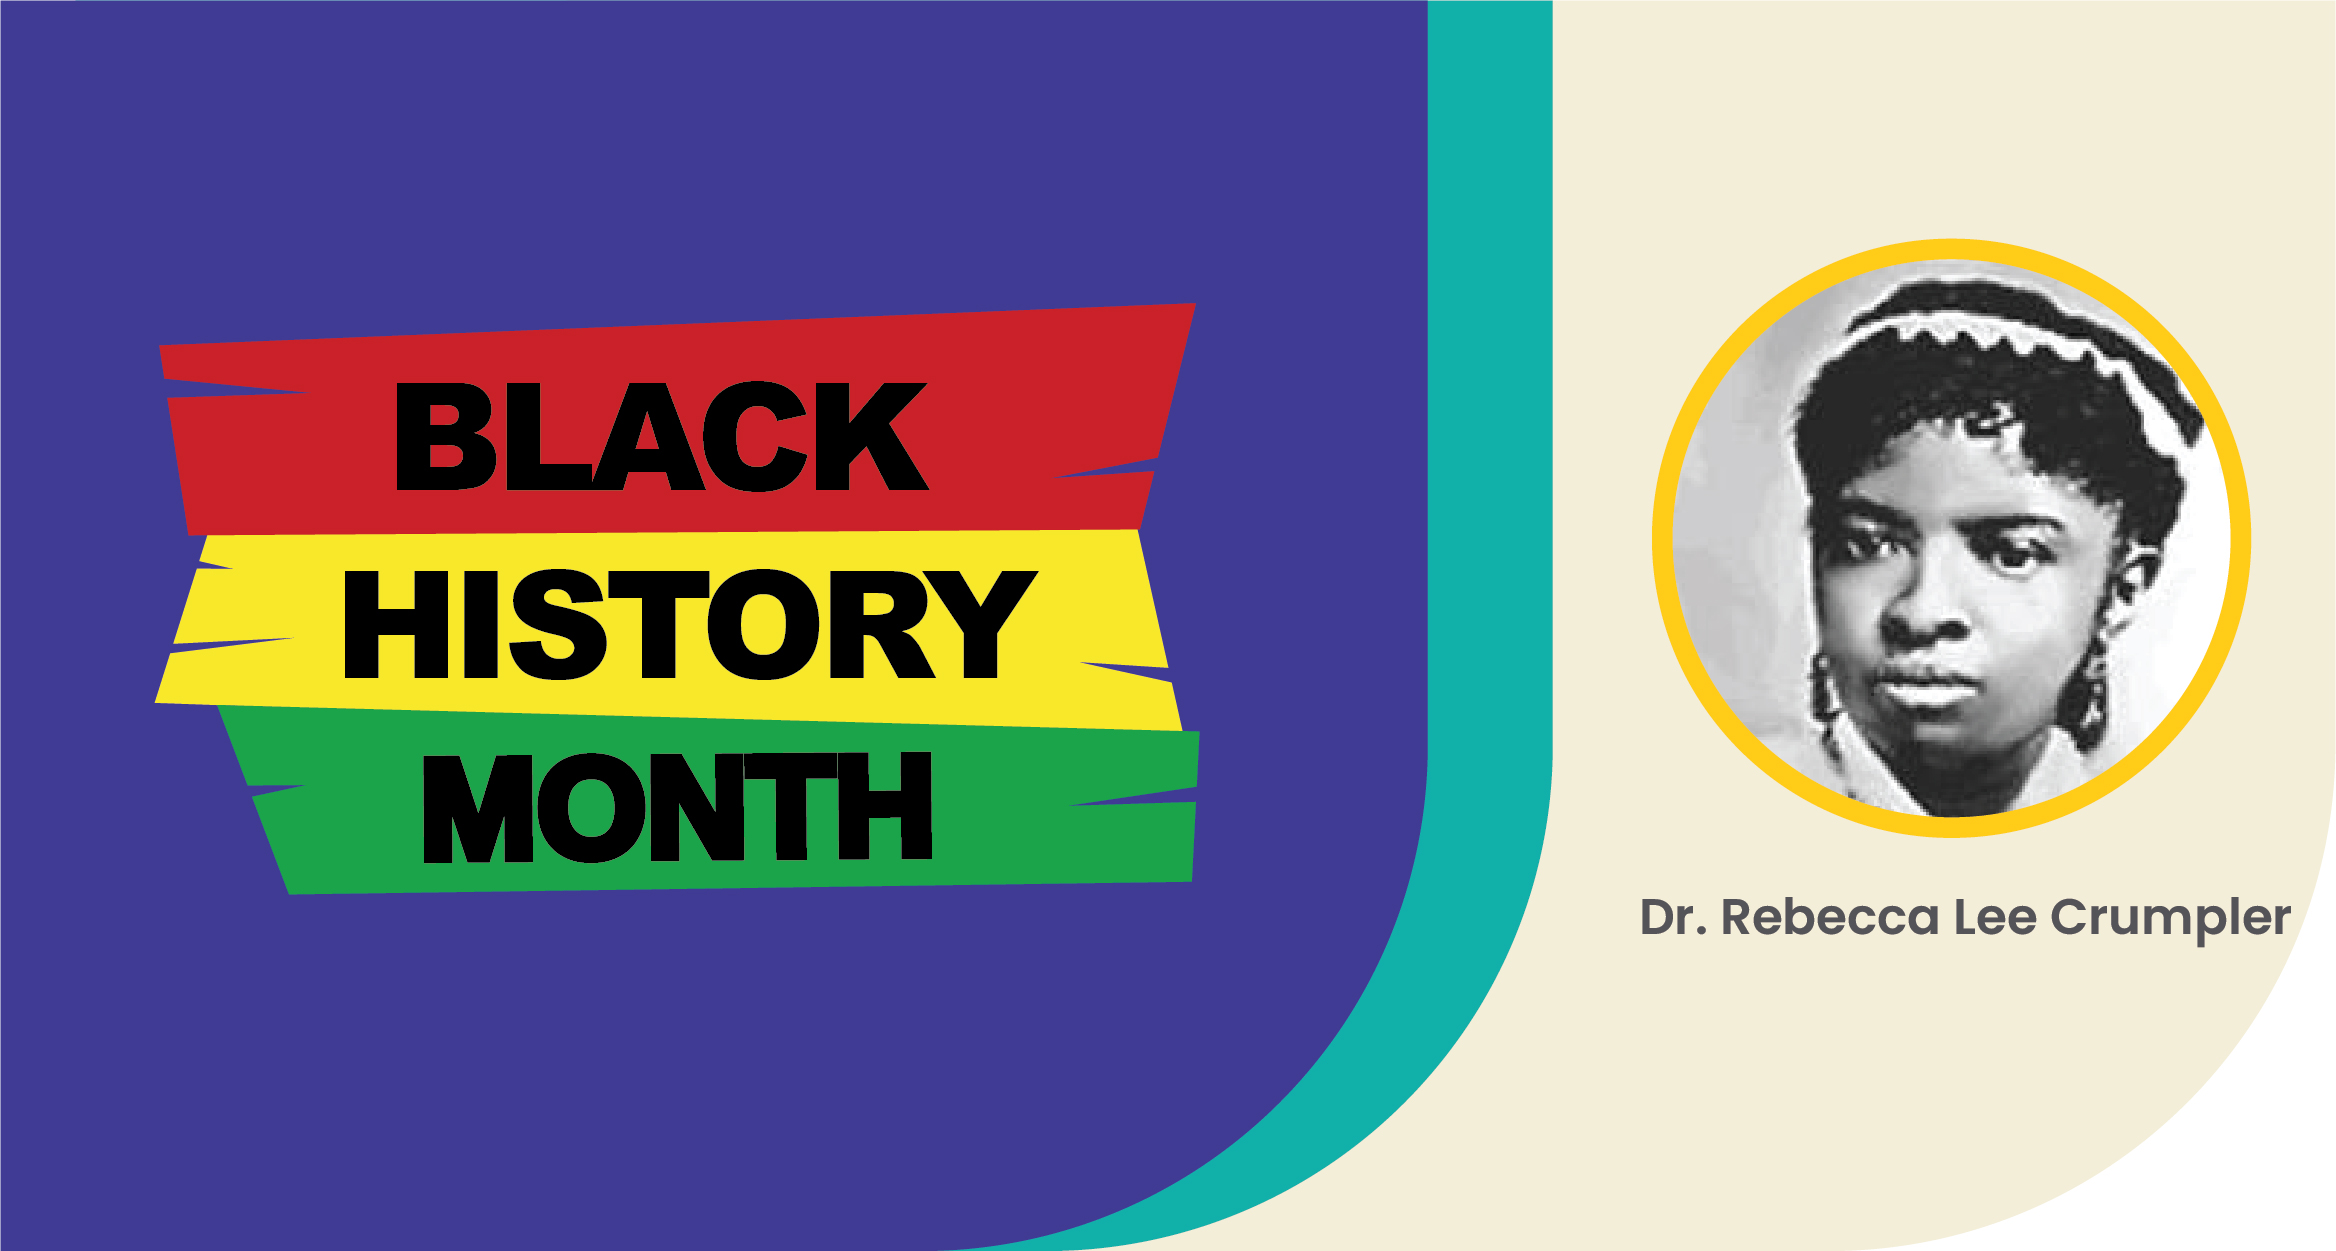 Black History Month: Dr. Rebecca Lee Crumpler